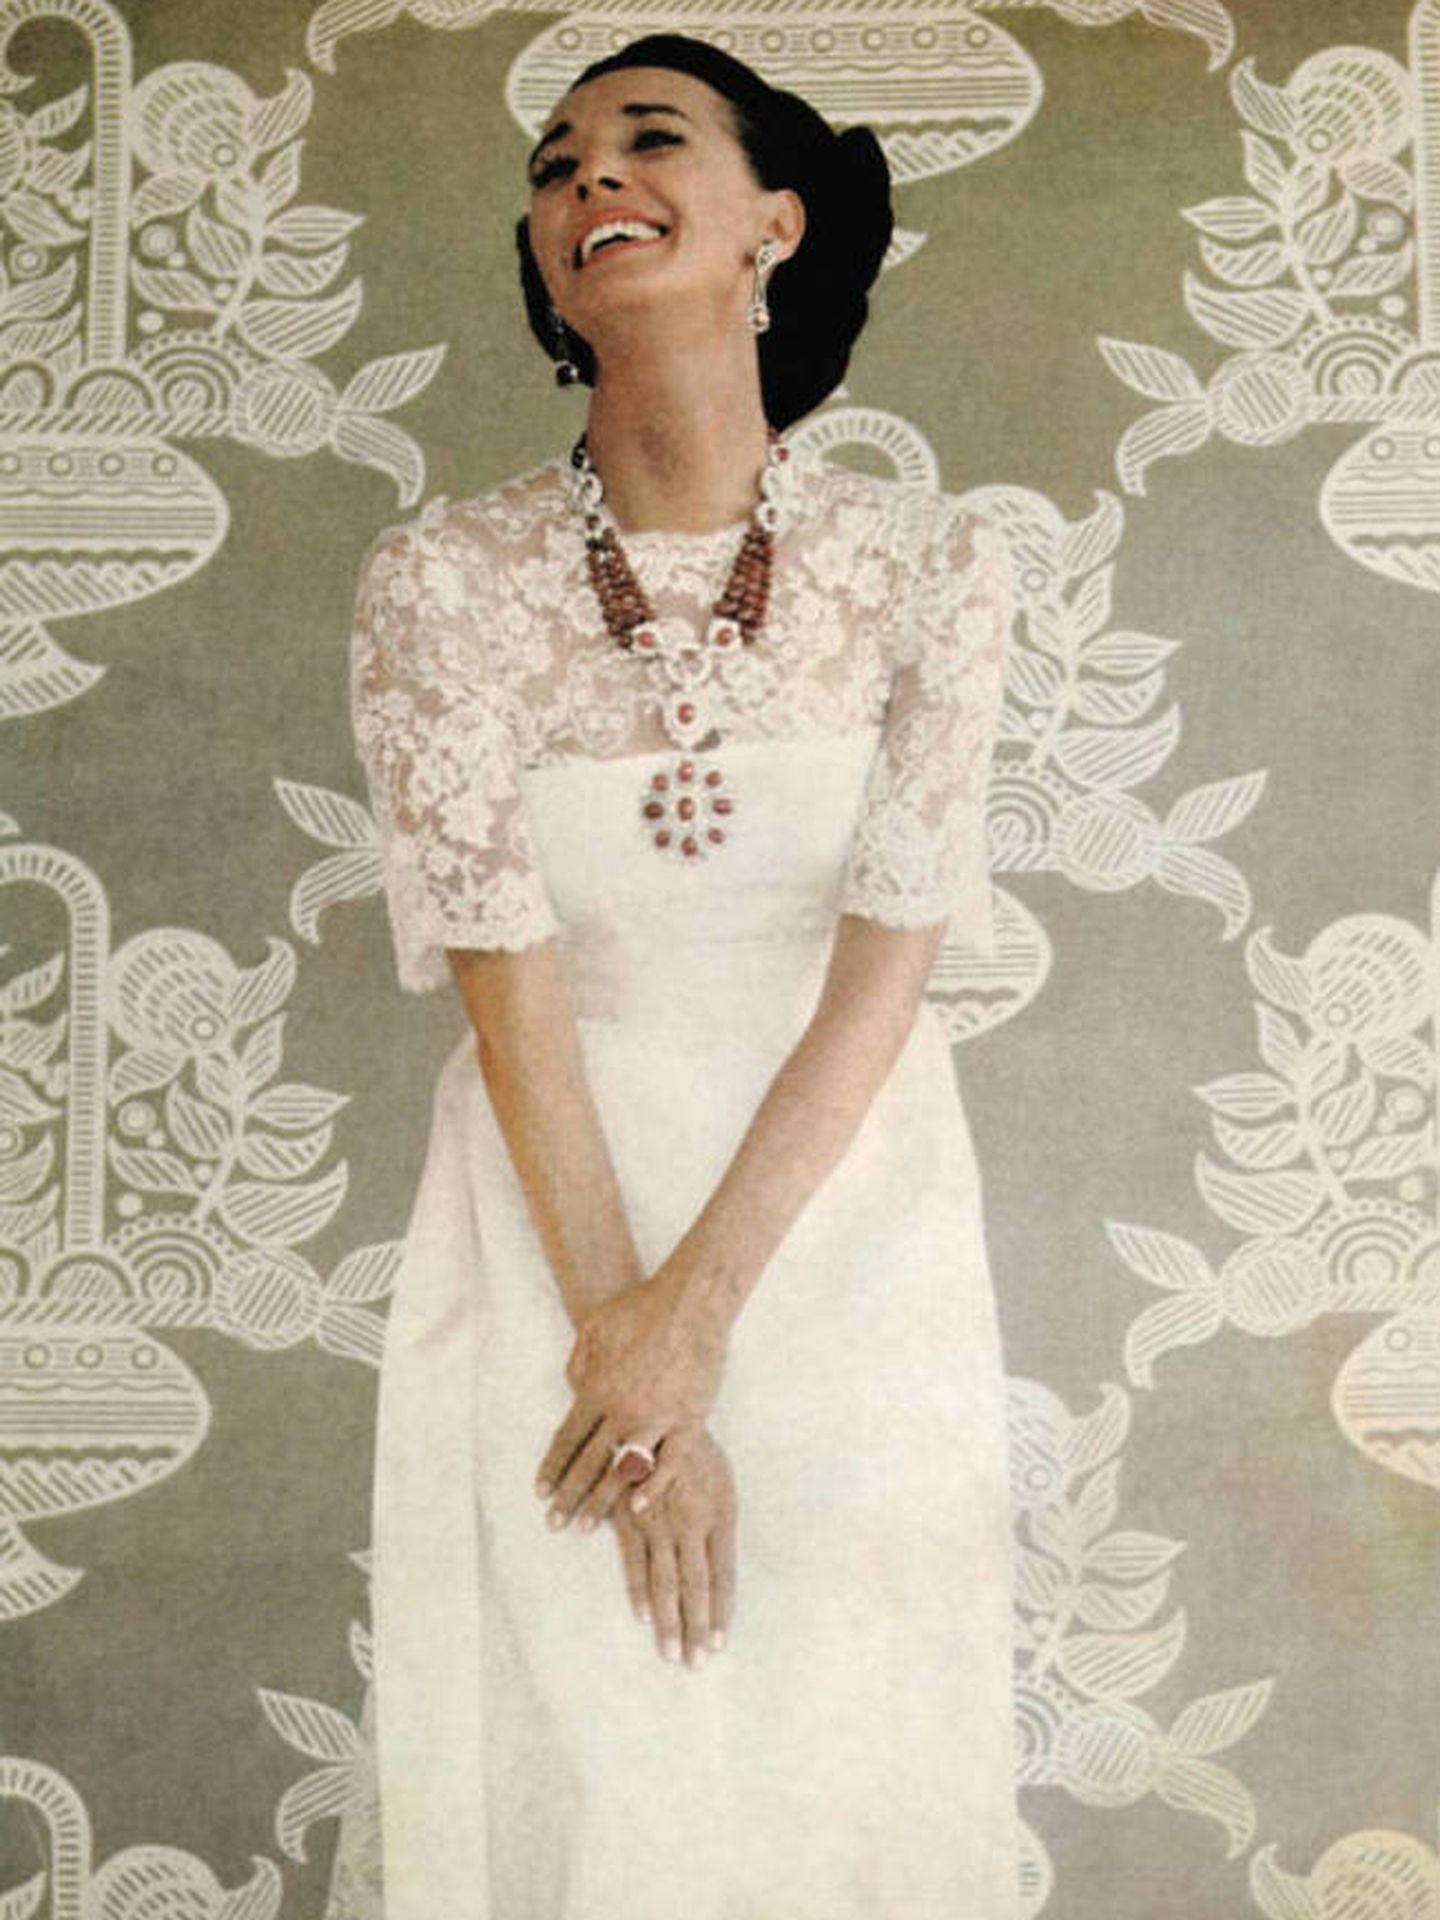 La condesa de Romanones, posando con sus joyas en una imagen de los años 70. (Getty)